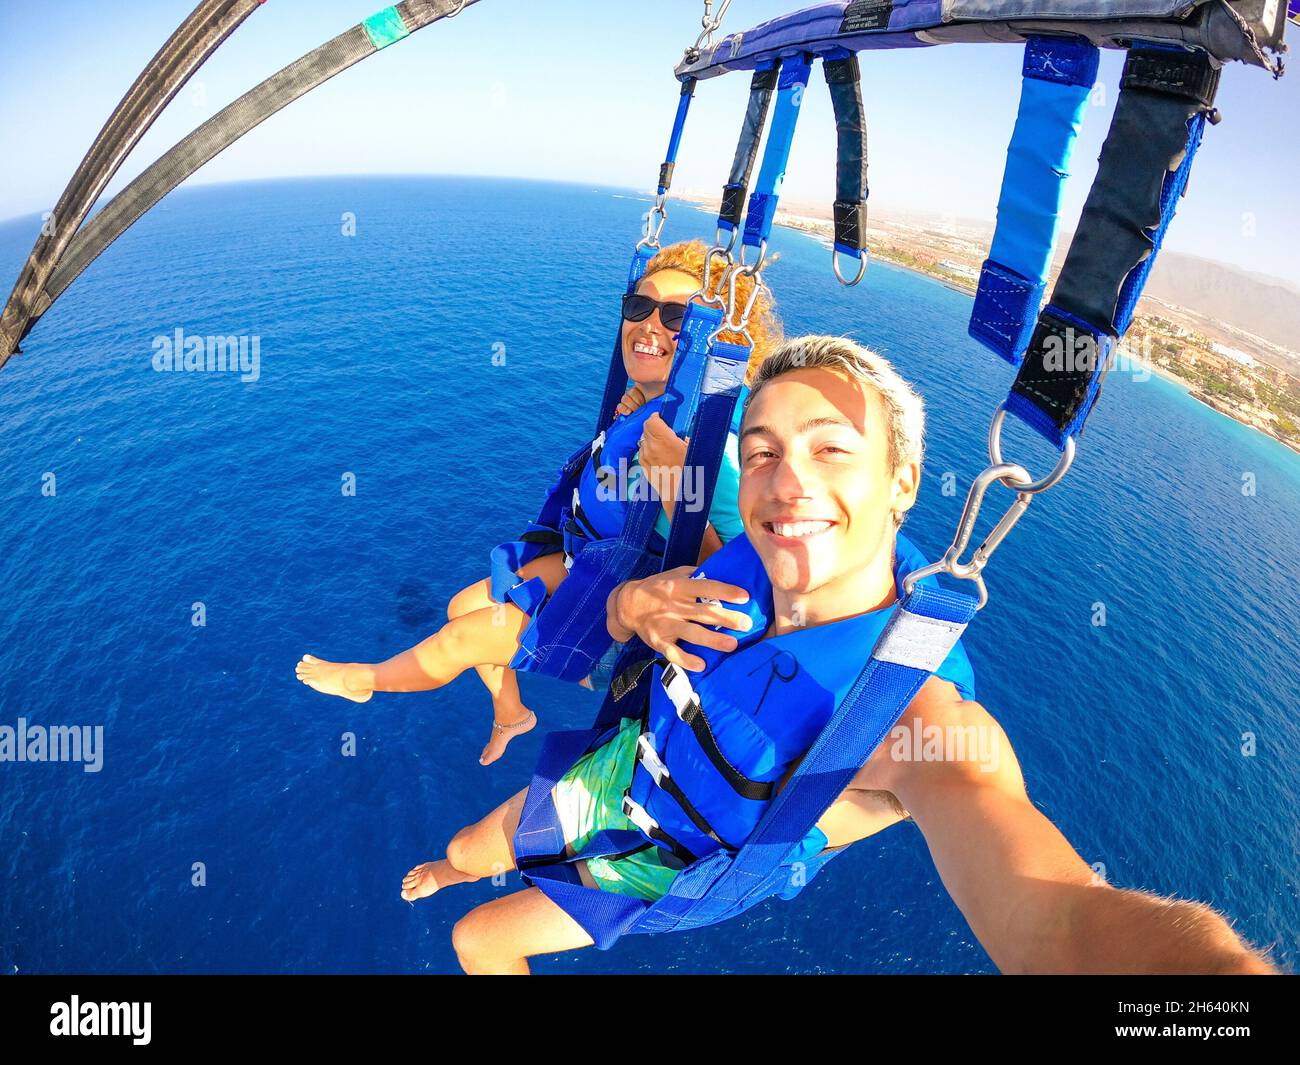 coppia di due persone felici godendo l'estate e le vacanze facendo attività estreme sul mare con una barca - persone belle prendendo un selfie mentre facendo paracadutismo insieme Foto Stock